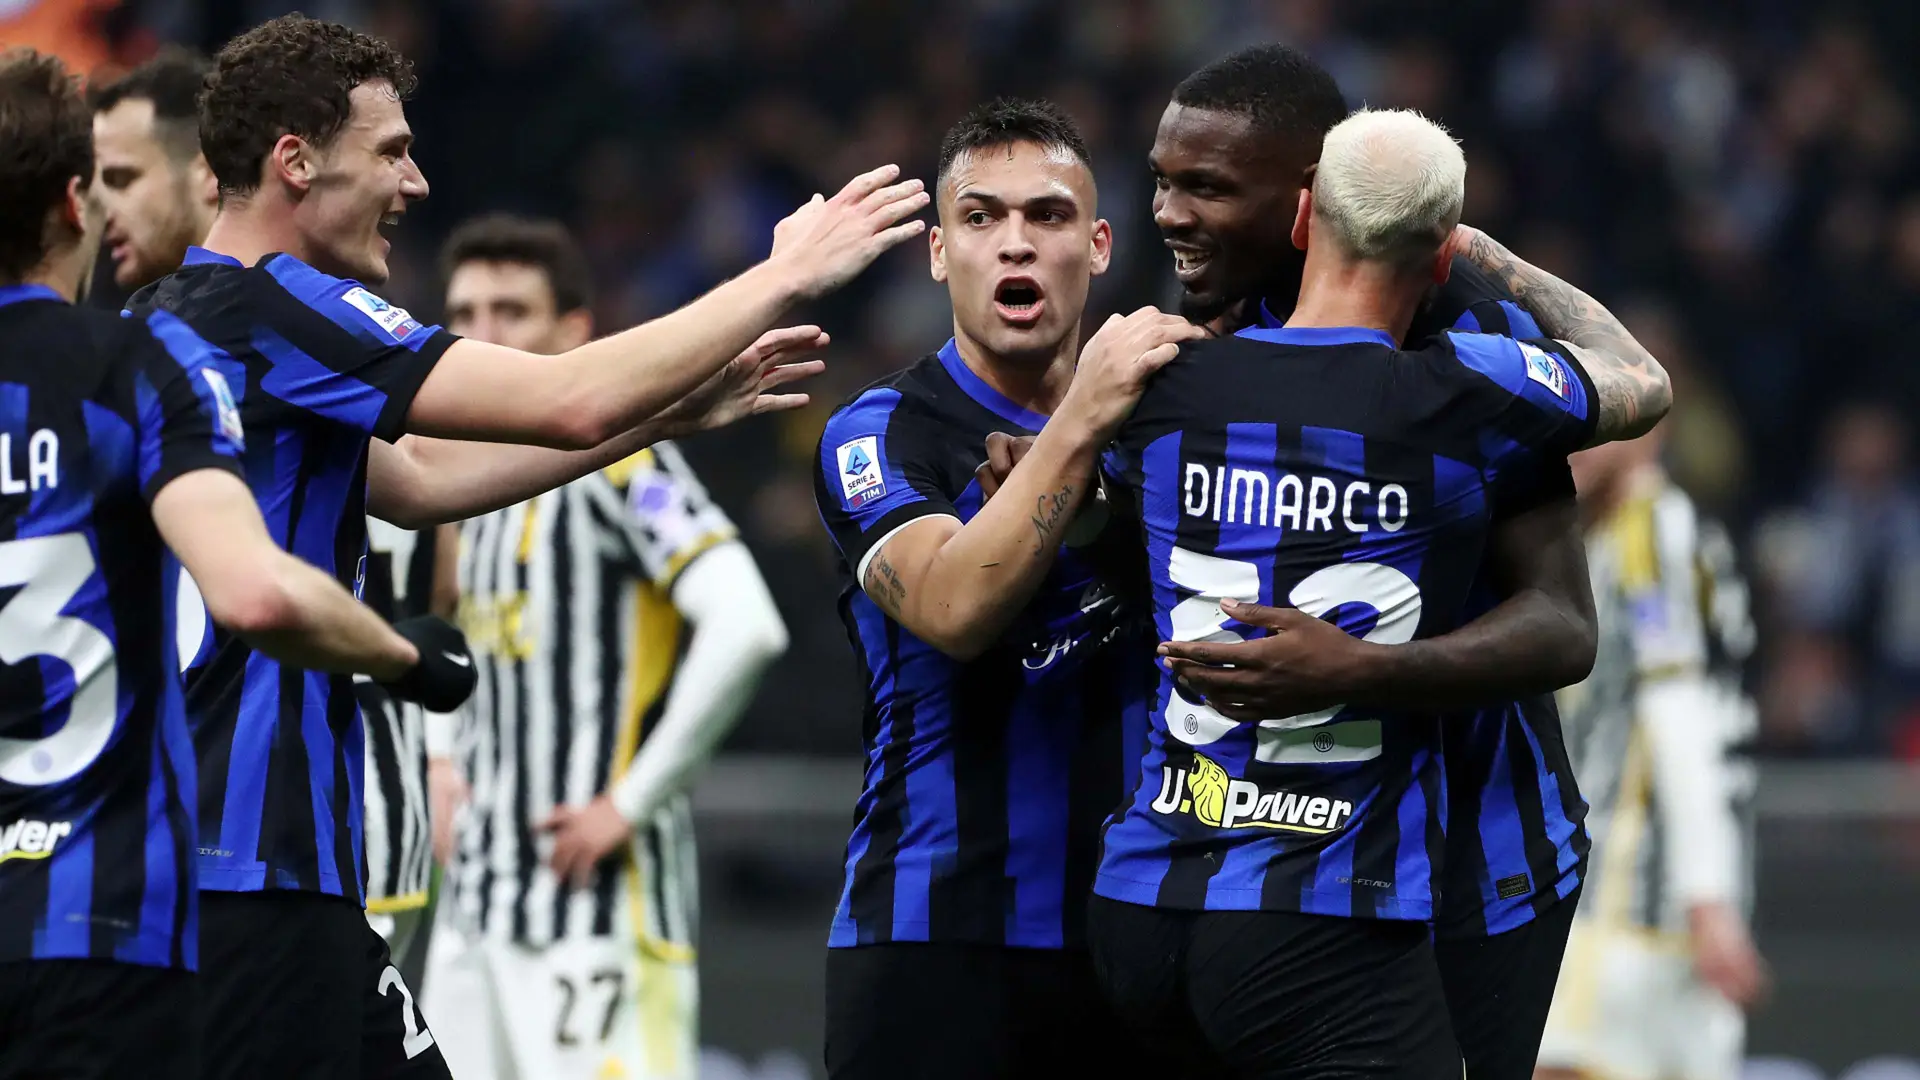 L'Inter schianta la Juventus a San Siro e blinda il 1° posto in classifica in A: la sintesi del match